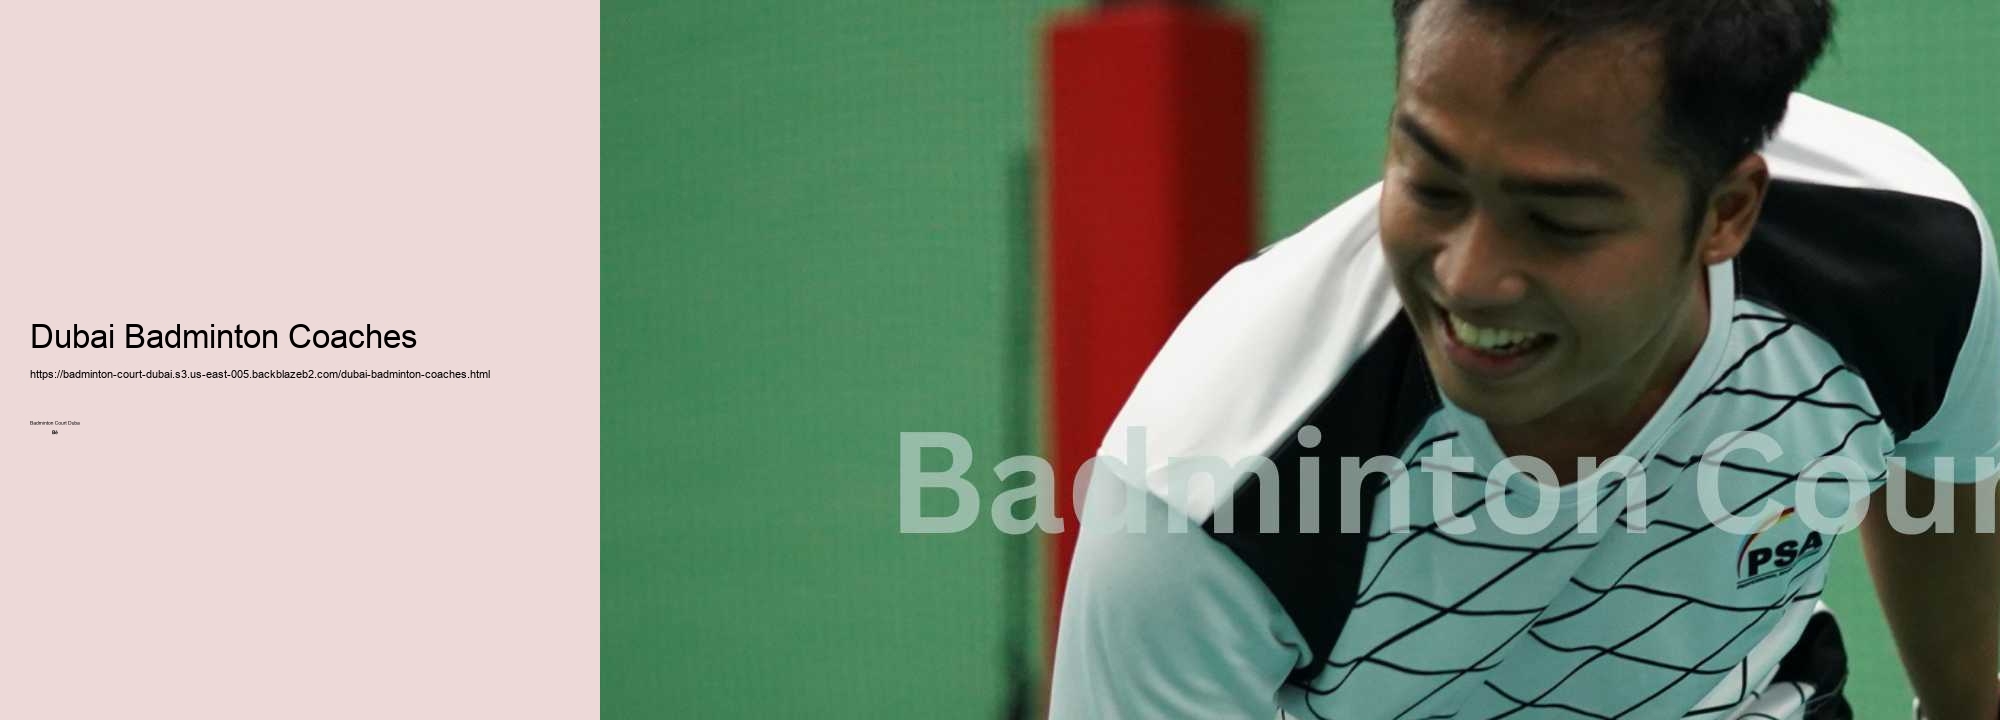 Dubai Badminton Coaches